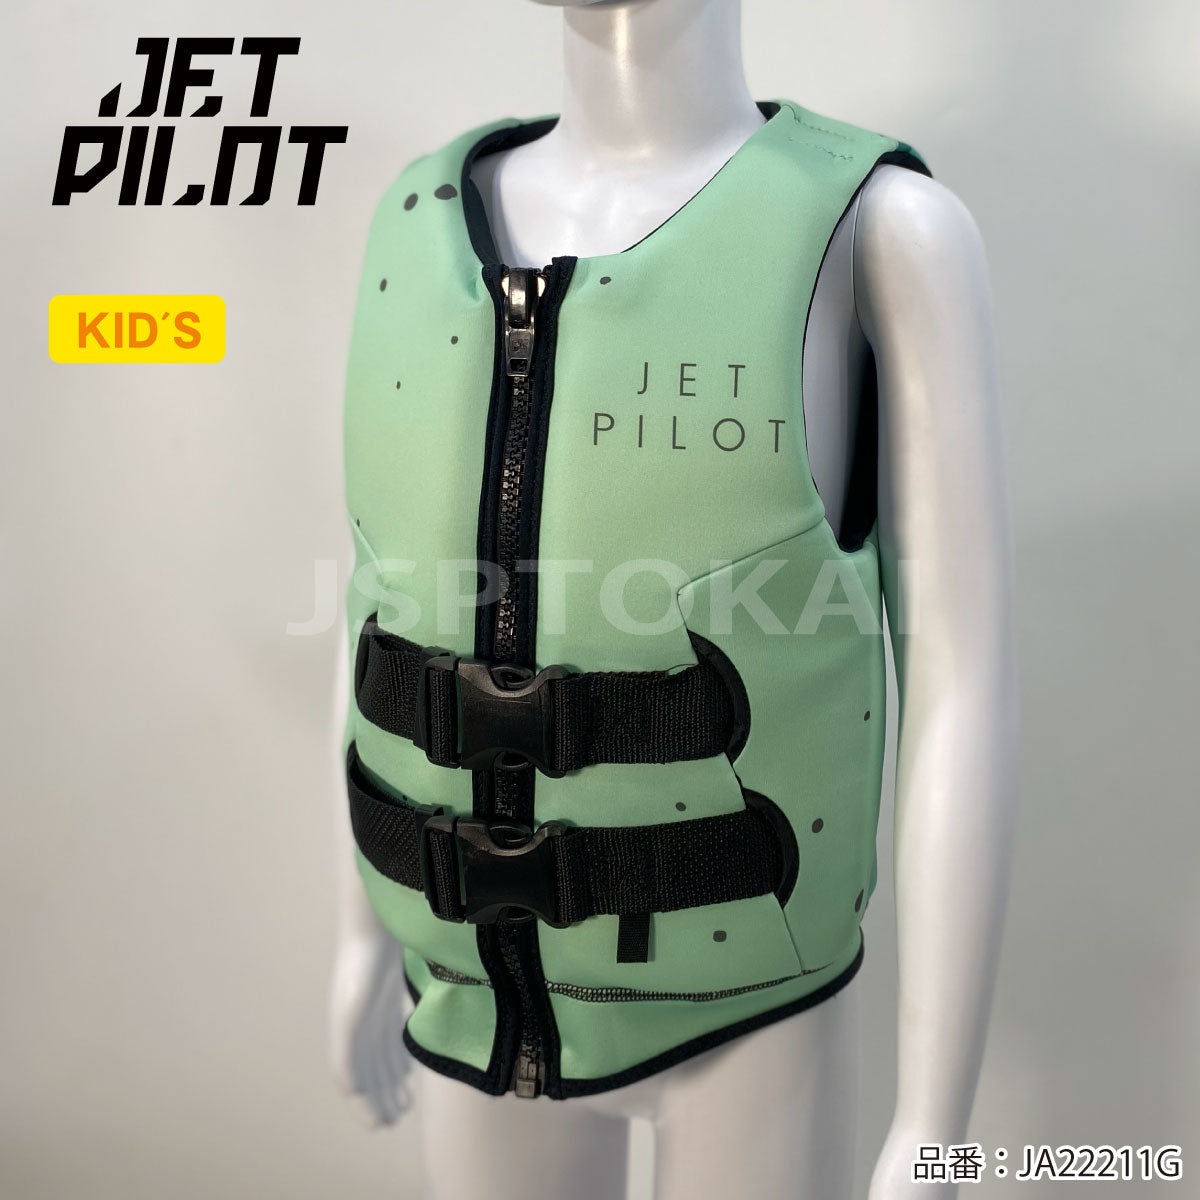 JETPILOT ジェットパイロット ライフジャケット こども キッズ ライフベスト   JA22211Gプール 海水浴ジュニア